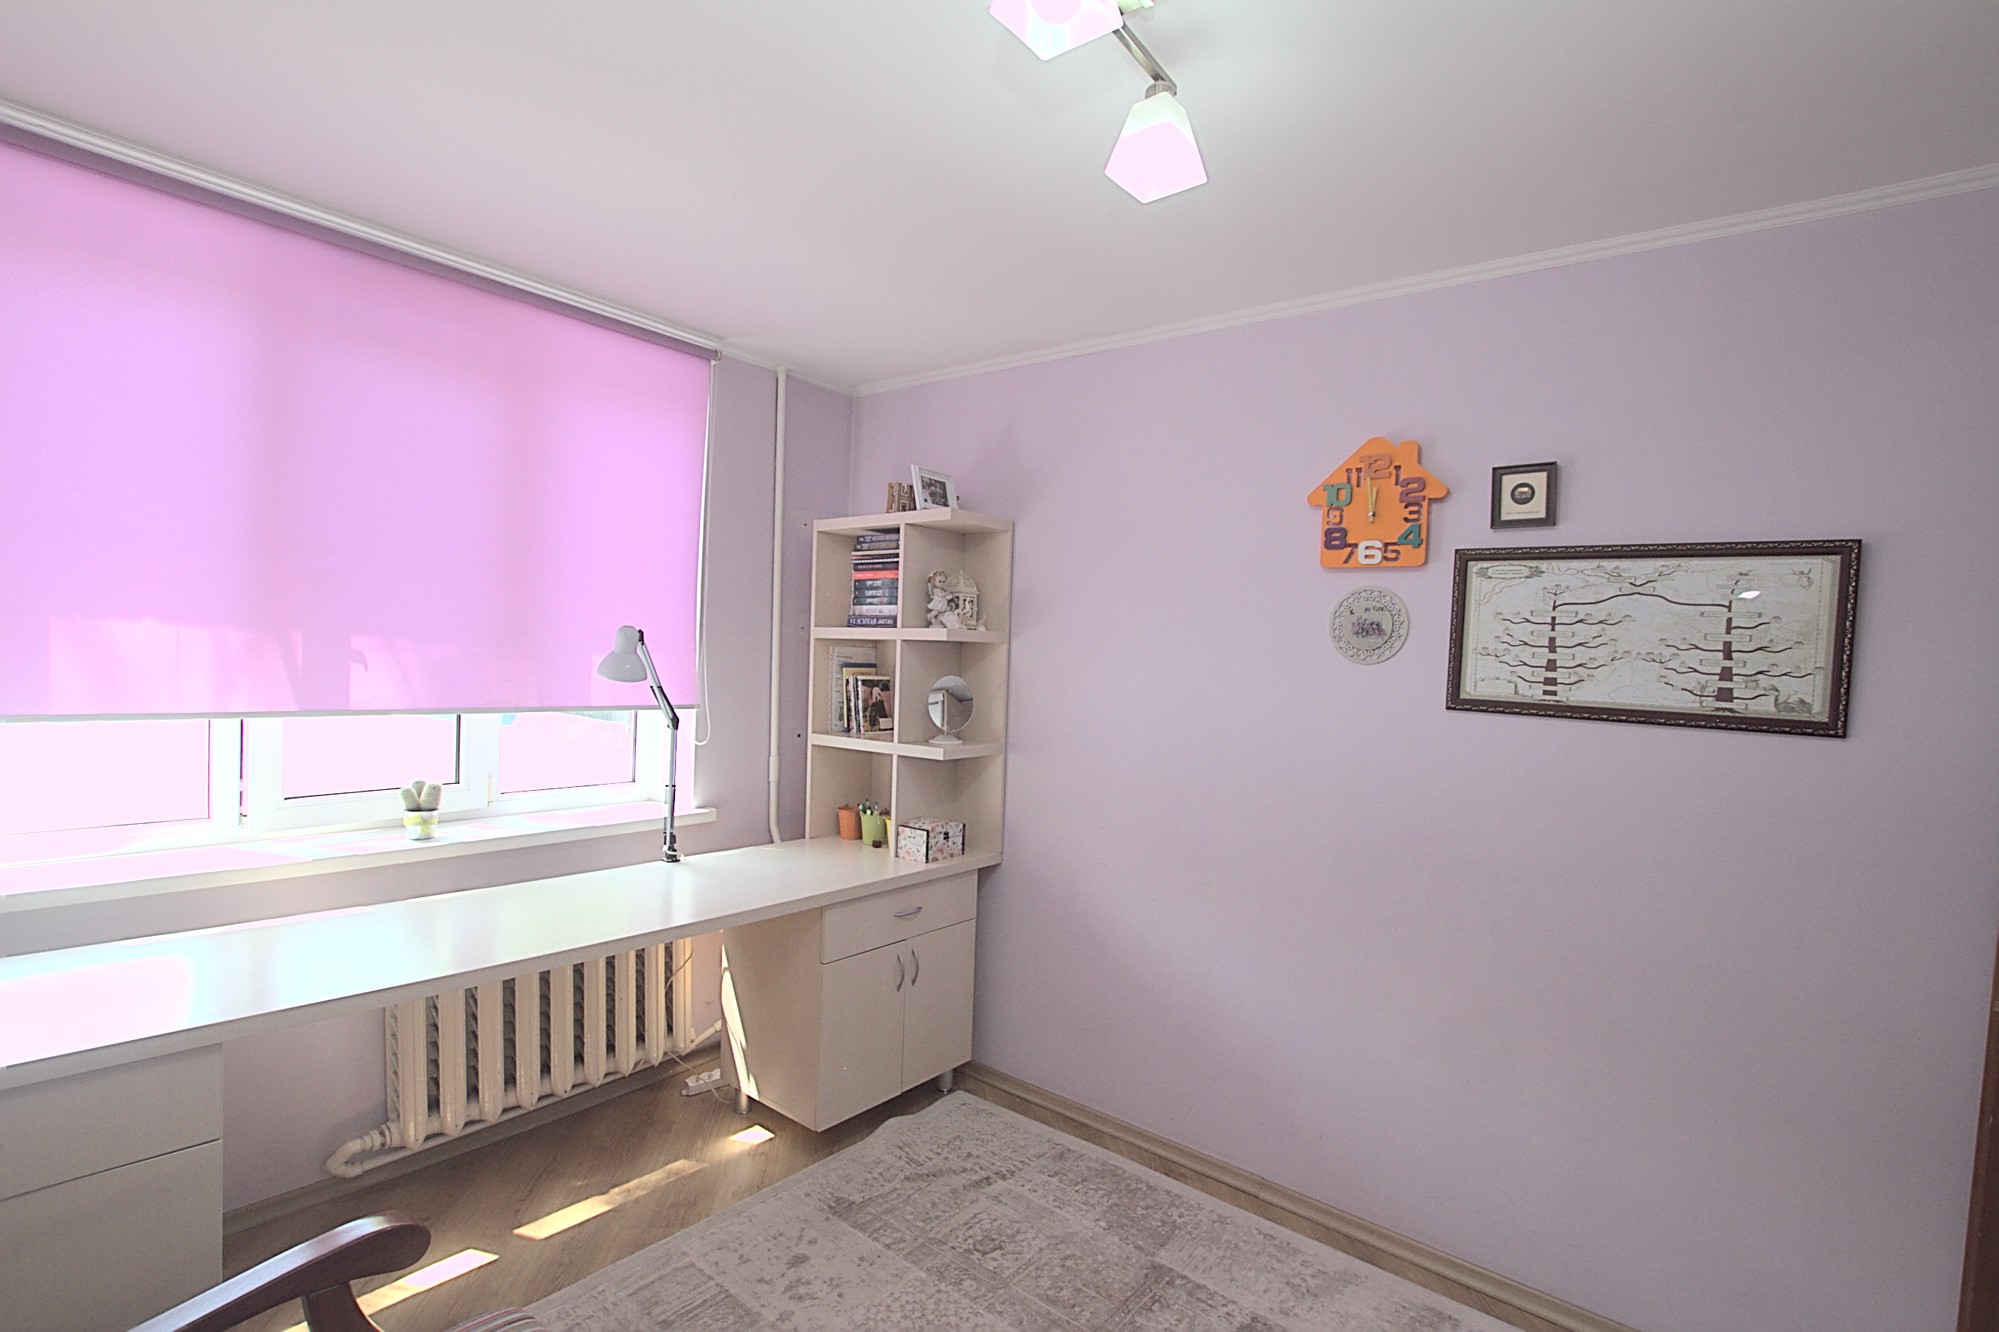 Rent near Dendrarium park in Chisinau: 2 rooms, 1 bedroom, 48 m²